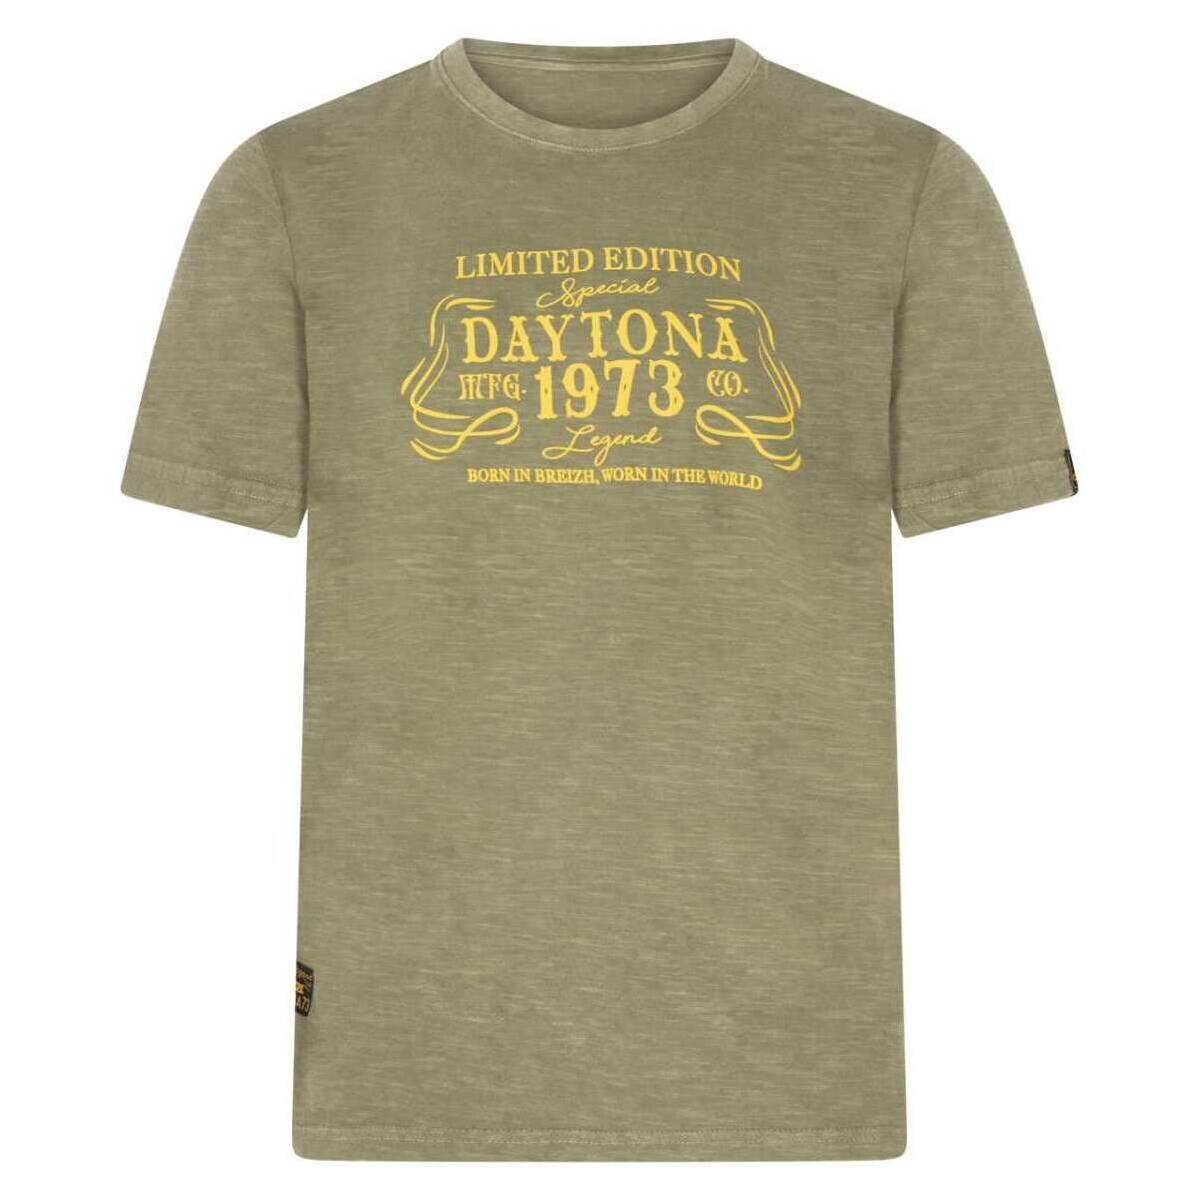 Vêtements Homme T-shirts manches courtes Daytona 164026VTPE24 Kaki